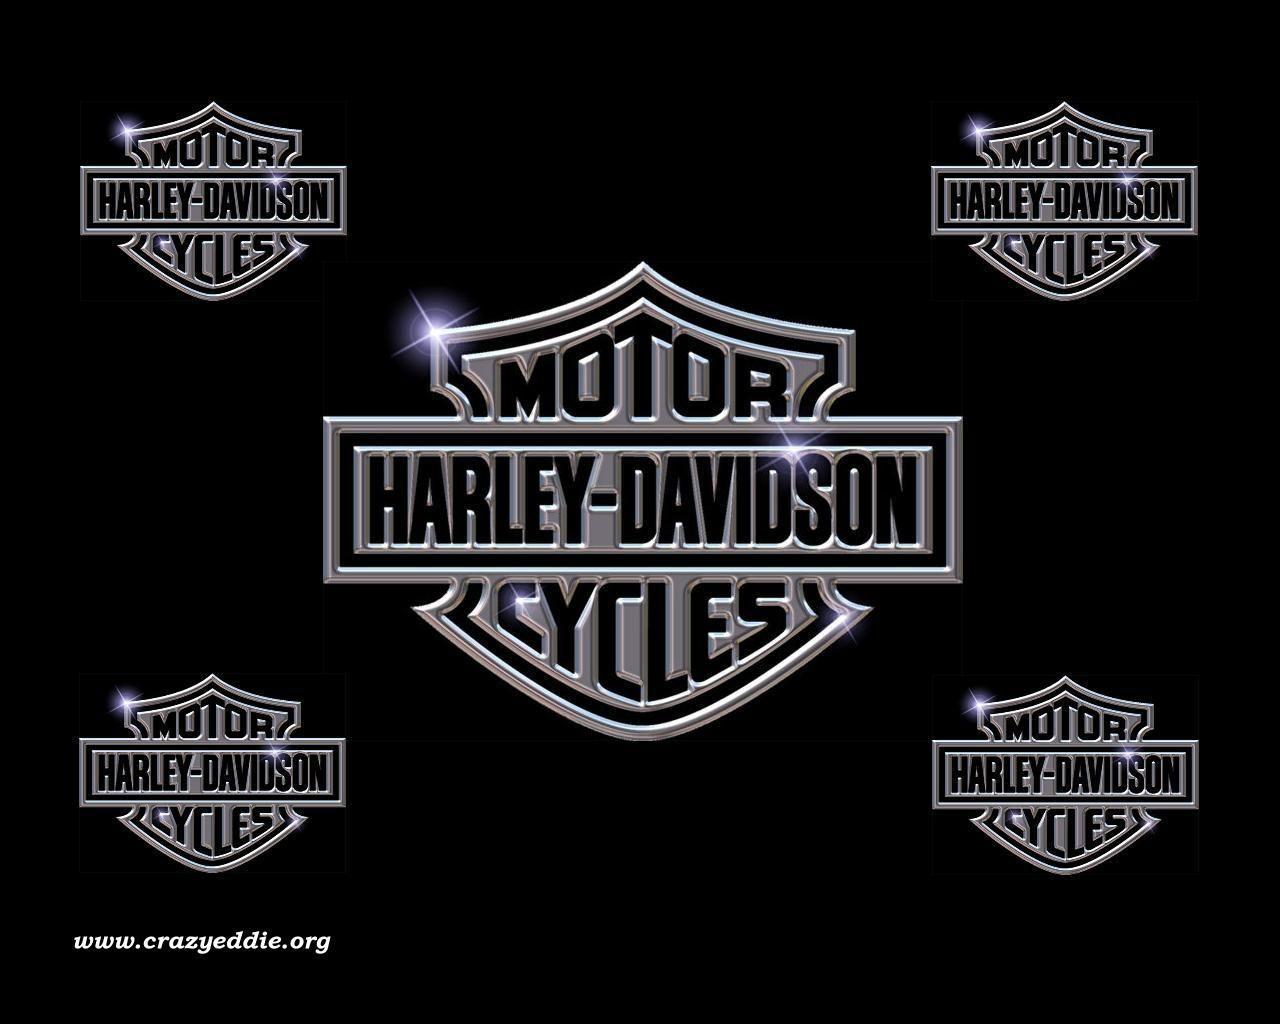 Harley Davidson Logos Picture For Desktop